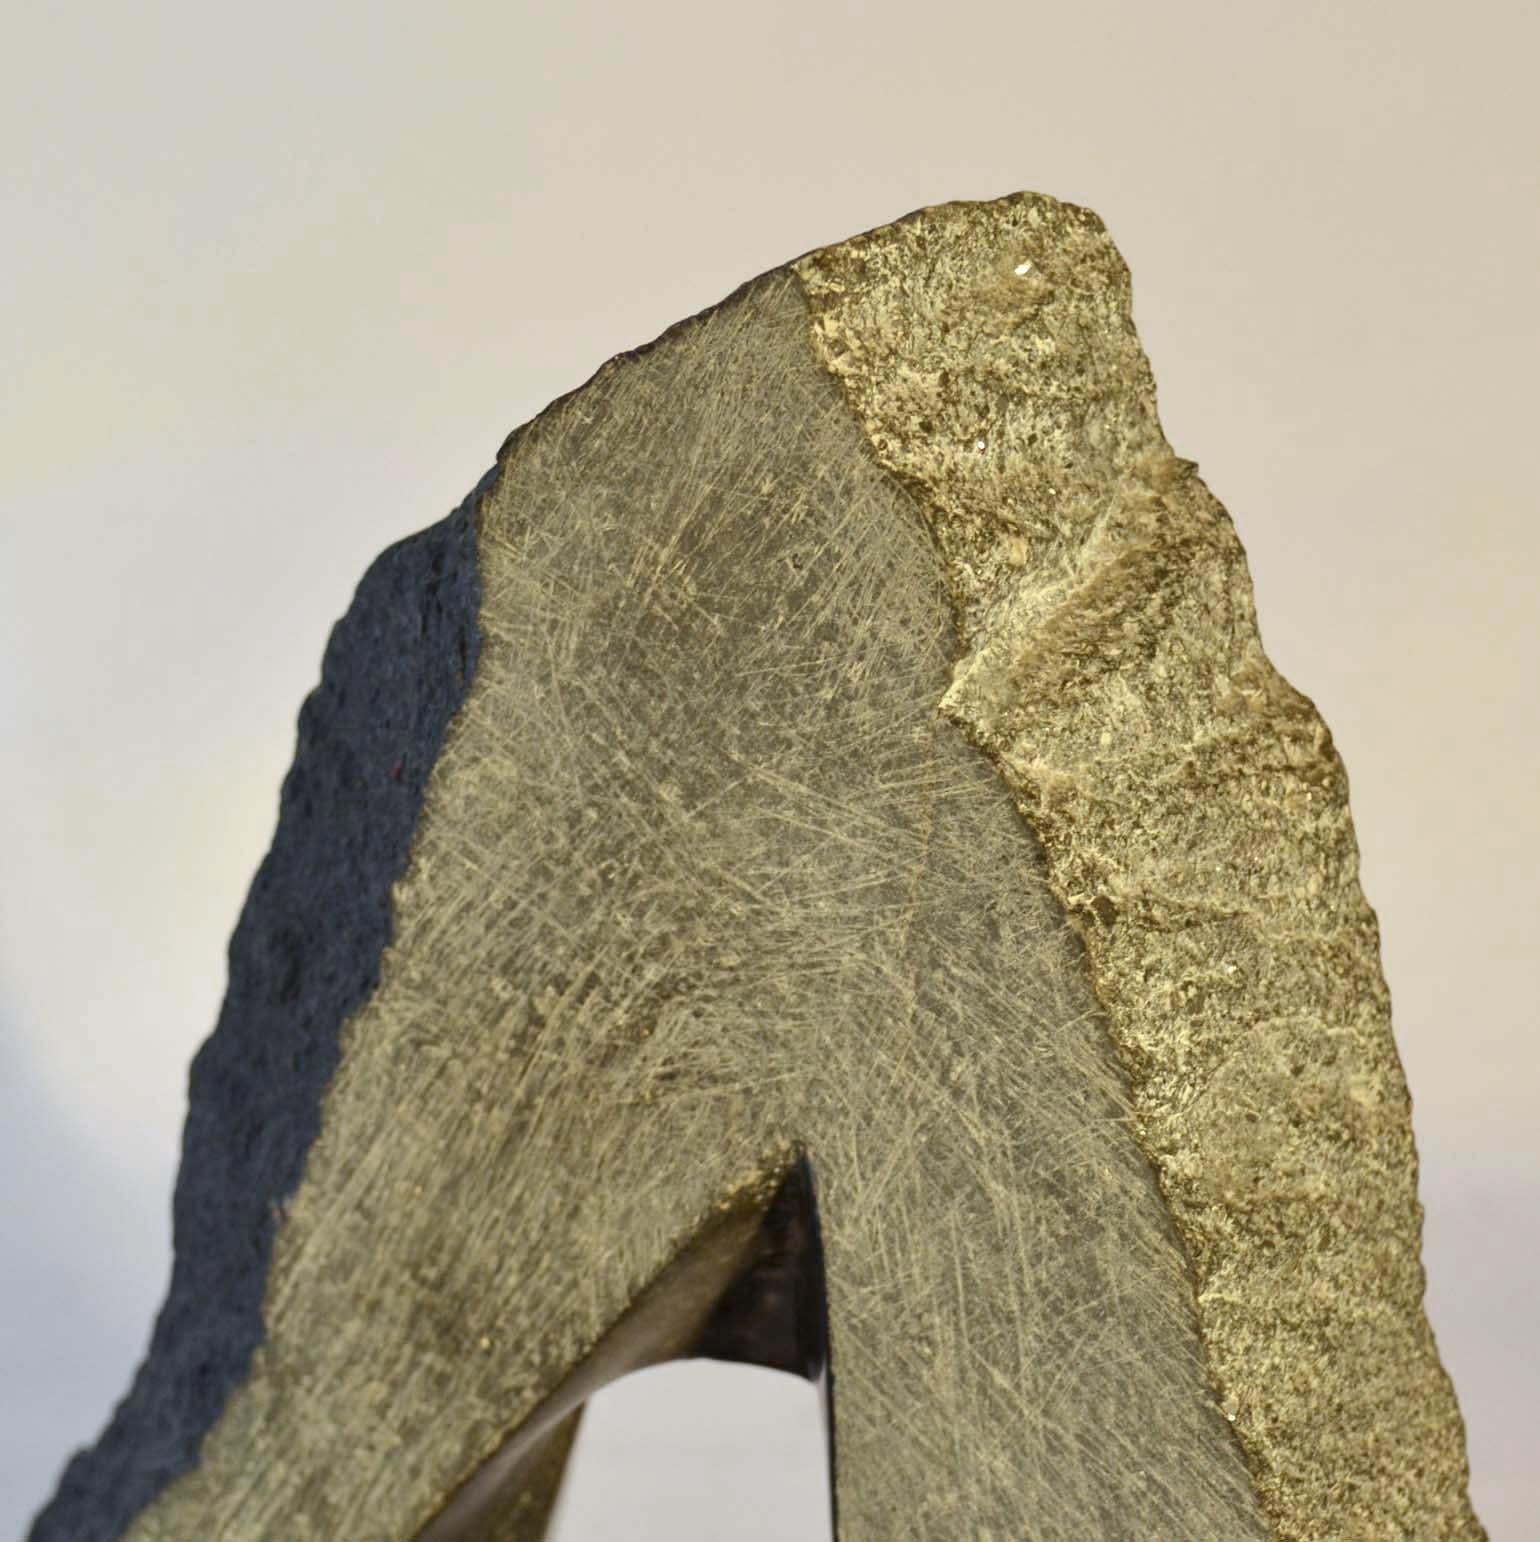 Fin du 20e siècle Sculpture néerlandaise abstraite géométrique en granit noir en vente